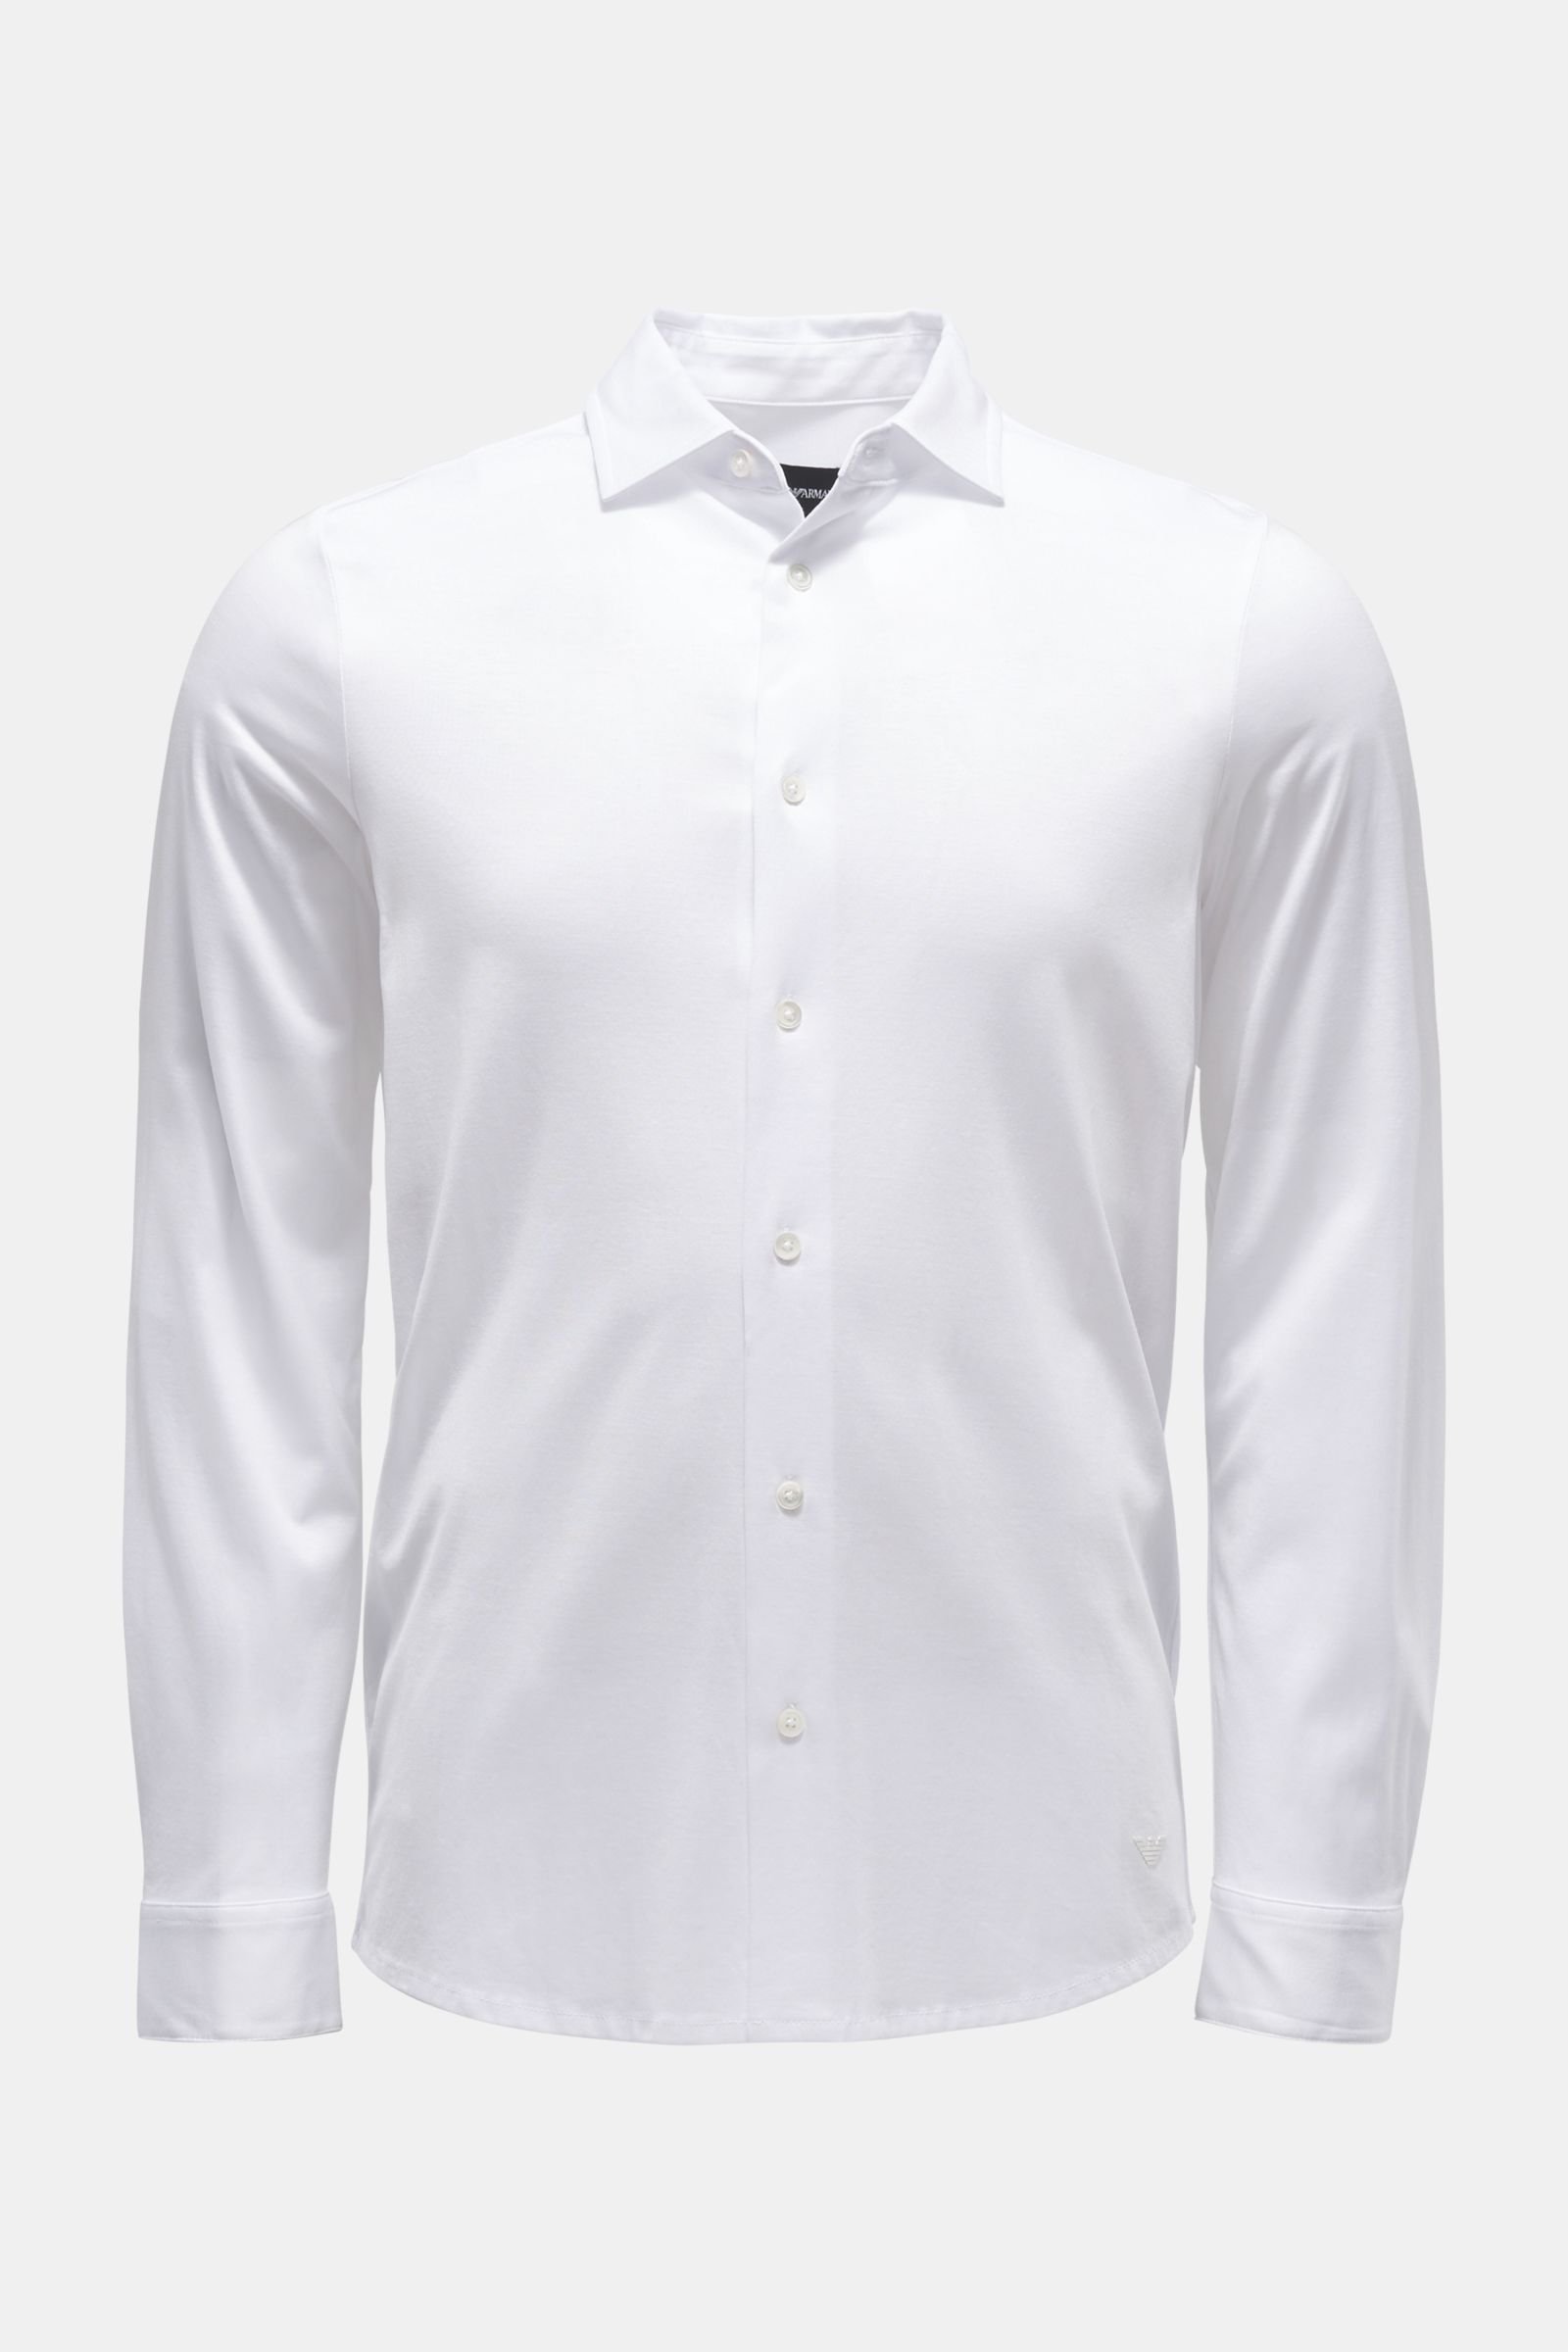 Jersey-Hemd schmaler Kragen weiß